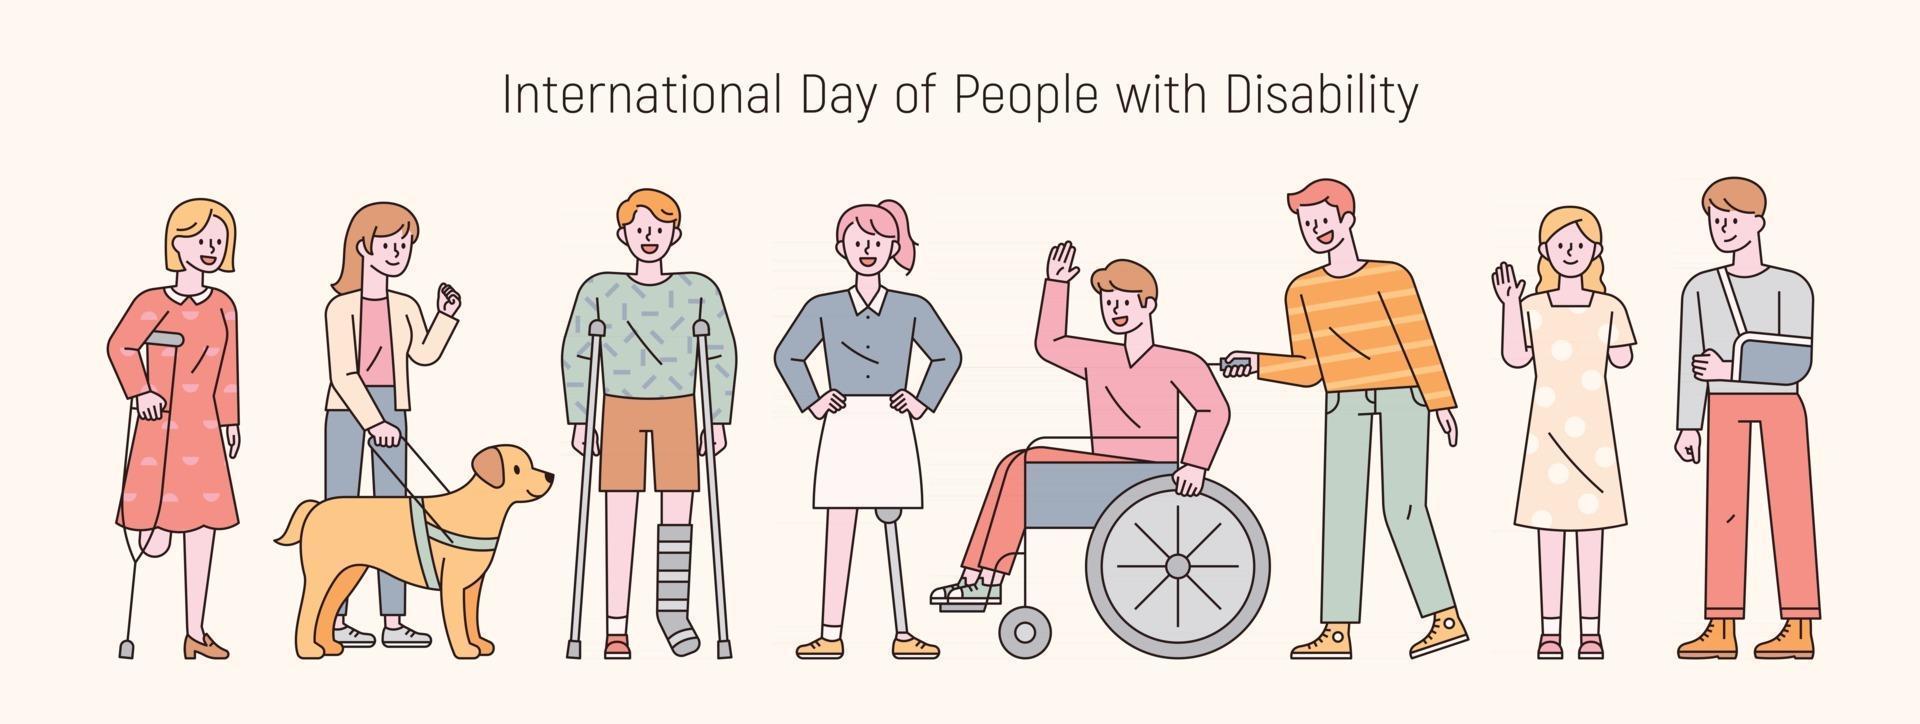 día internacional de las personas con discapacidad. Ilustración de vector mínimo de estilo de diseño plano.